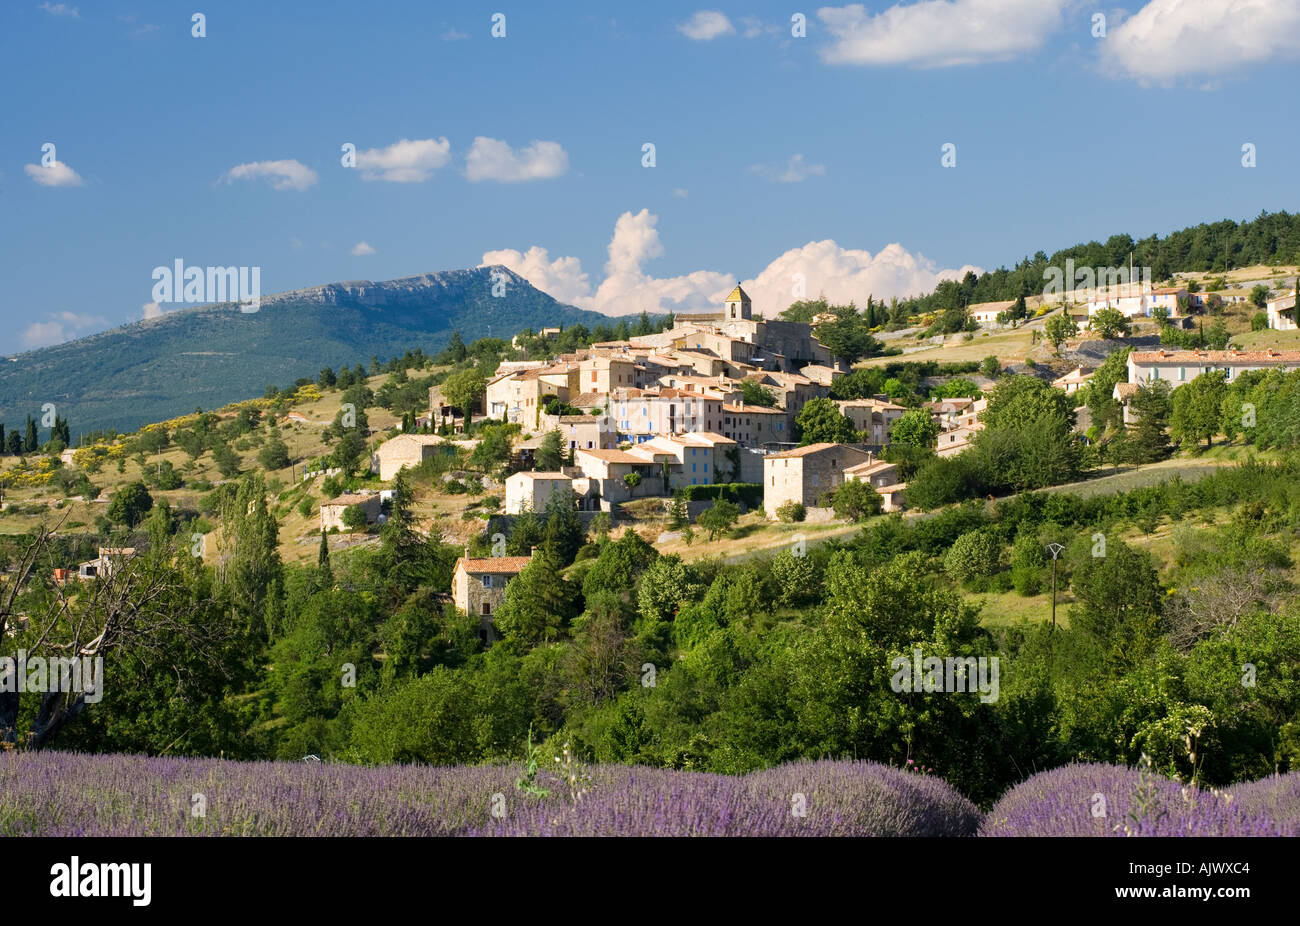 France Provence Vaucluse Région Vue sur champ de lavande à Aurel village perché Banque D'Images